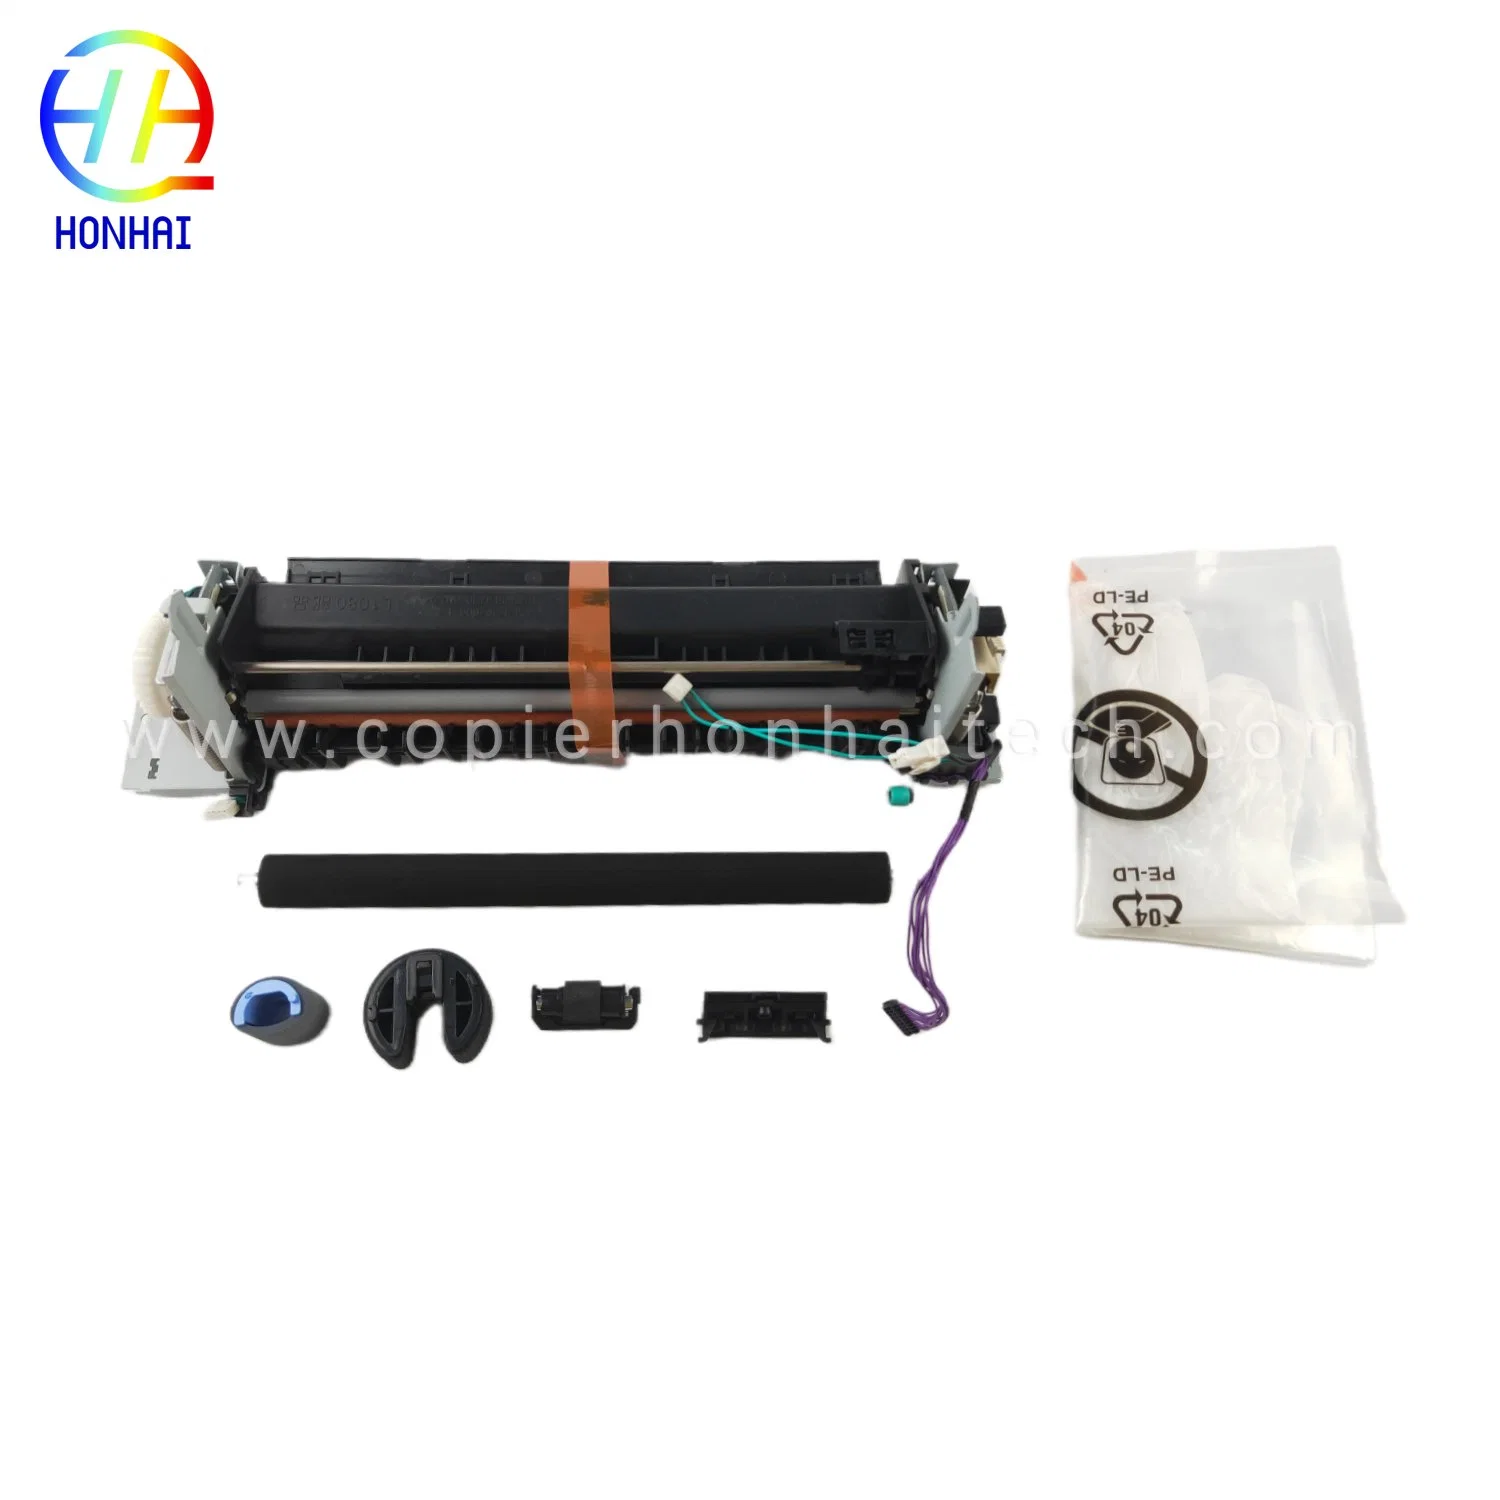 El 95% Original nuevo Kit de mantenimiento para impresoras HP Laserjet Pro 400 Color MFP M475DN